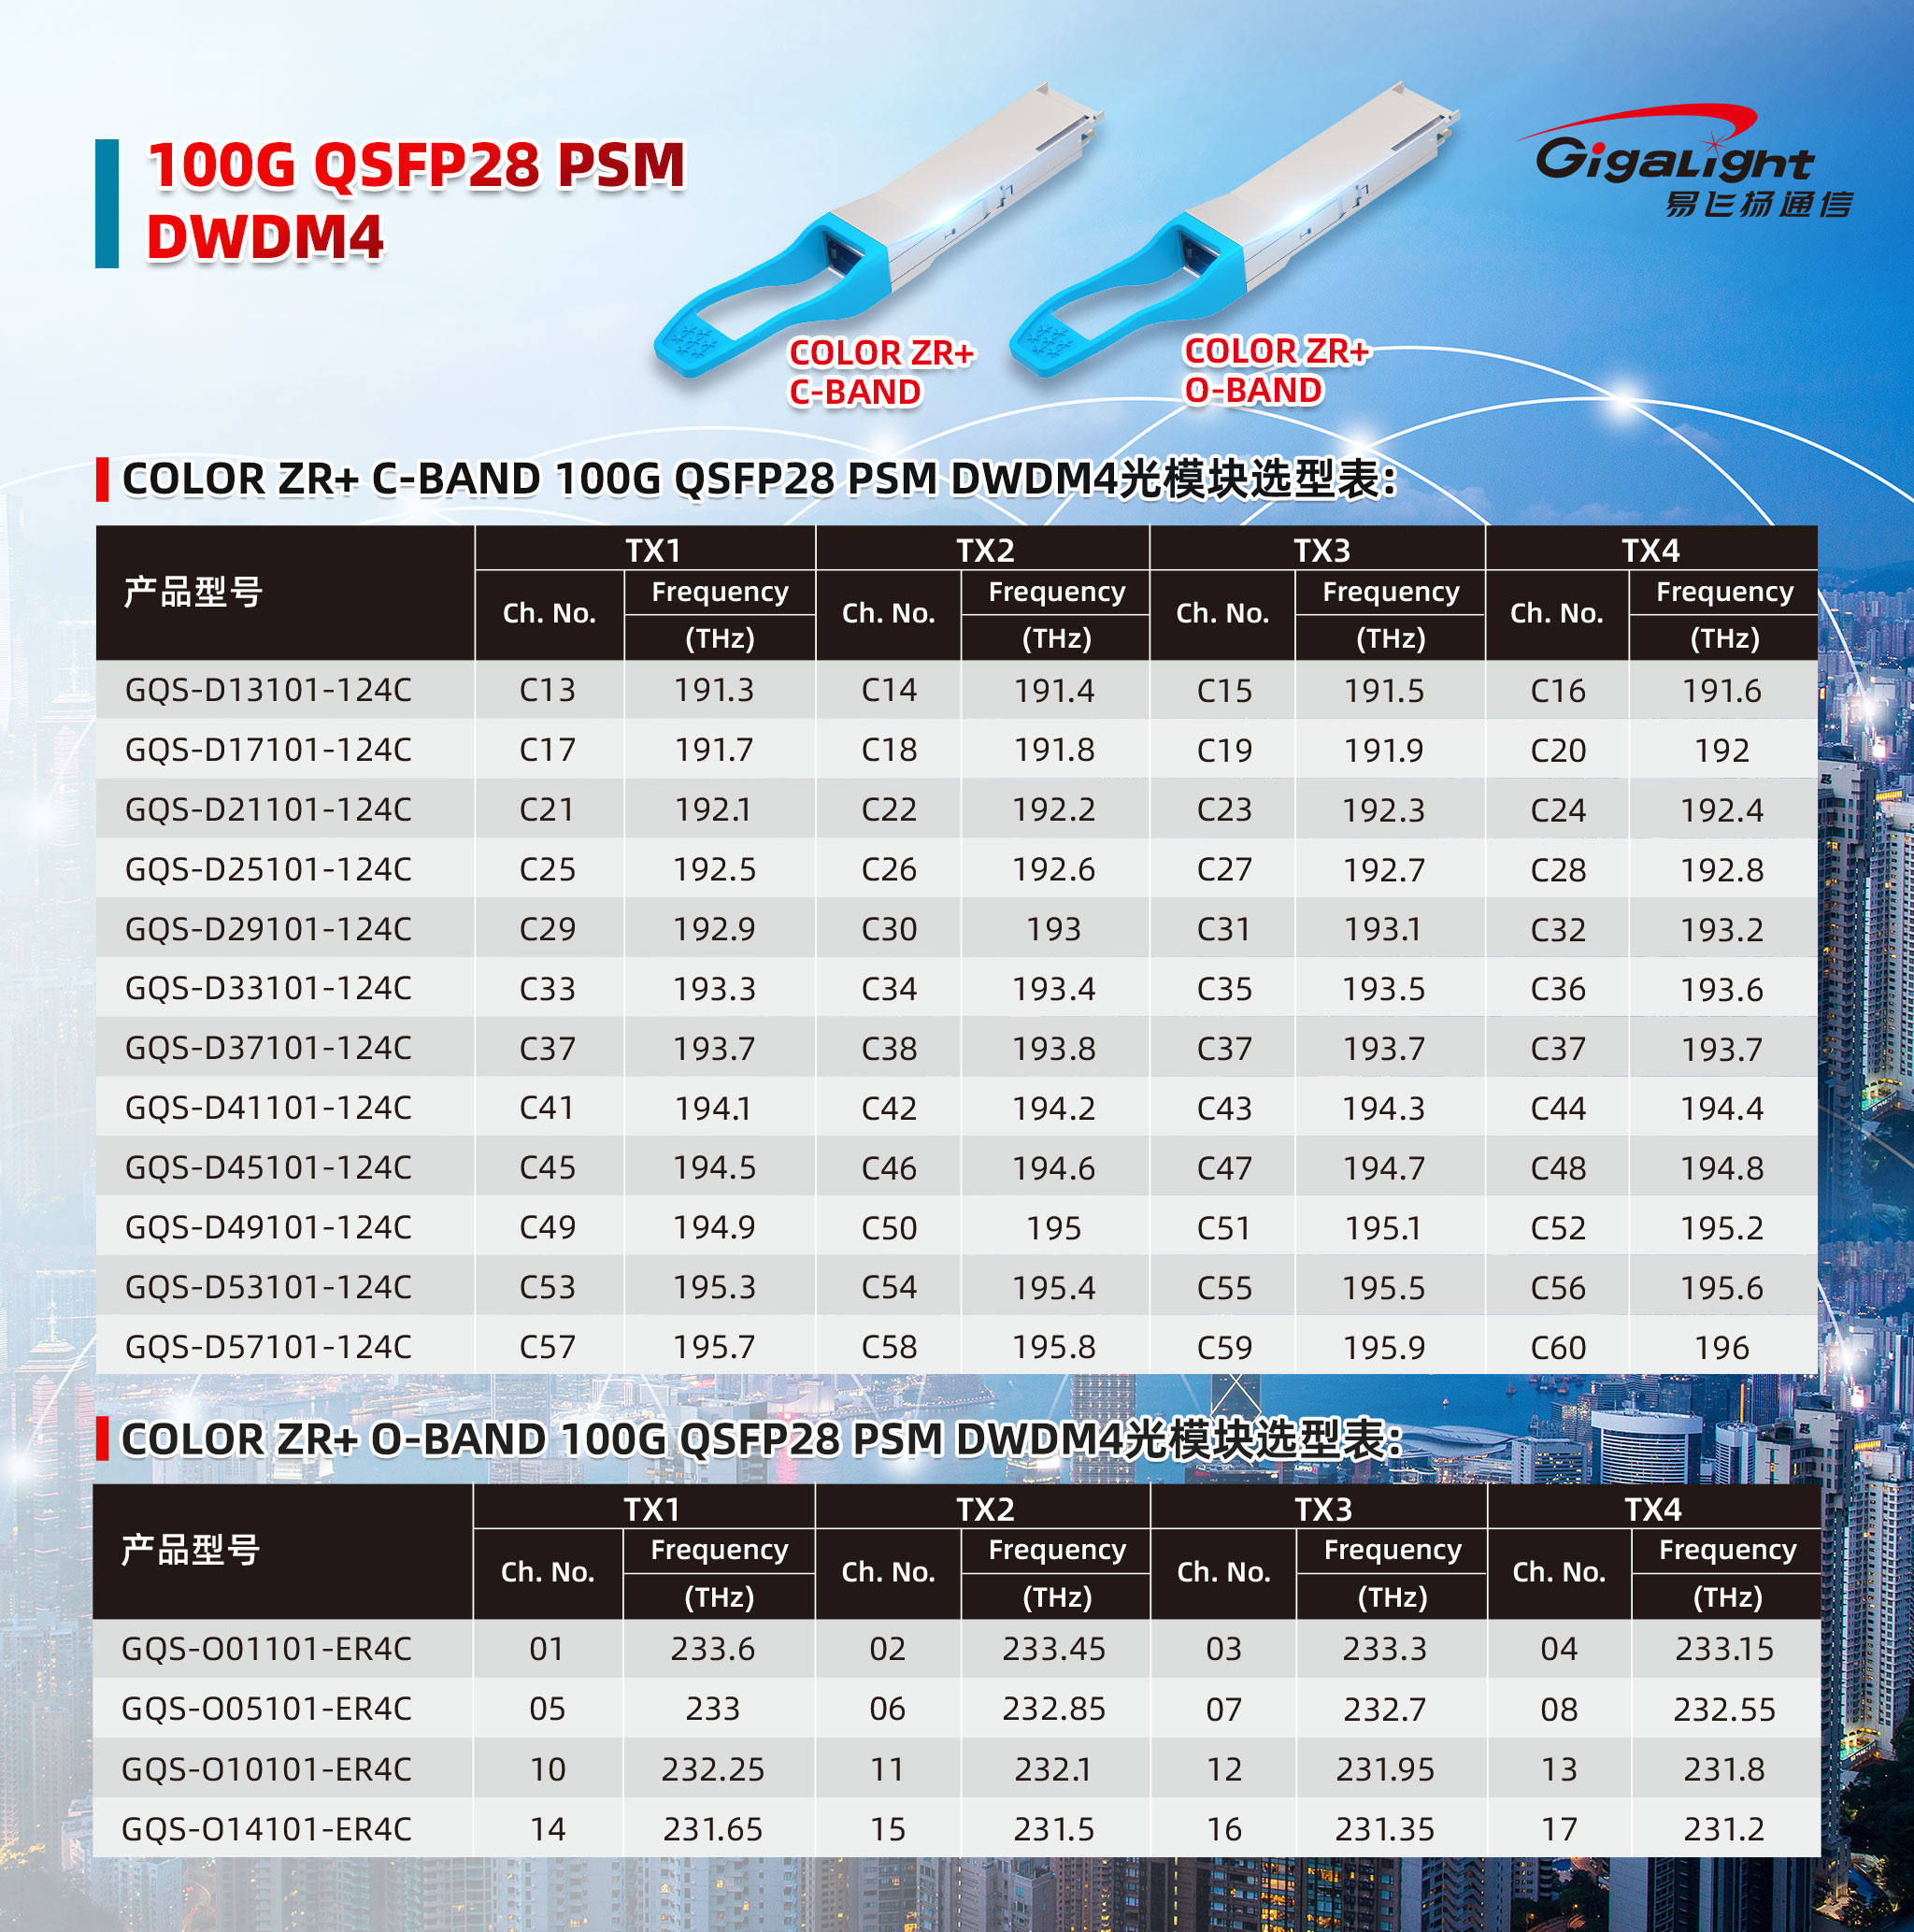 100G QSFP28 PSM DWDM4（C-BAND/O-BAND）波长表